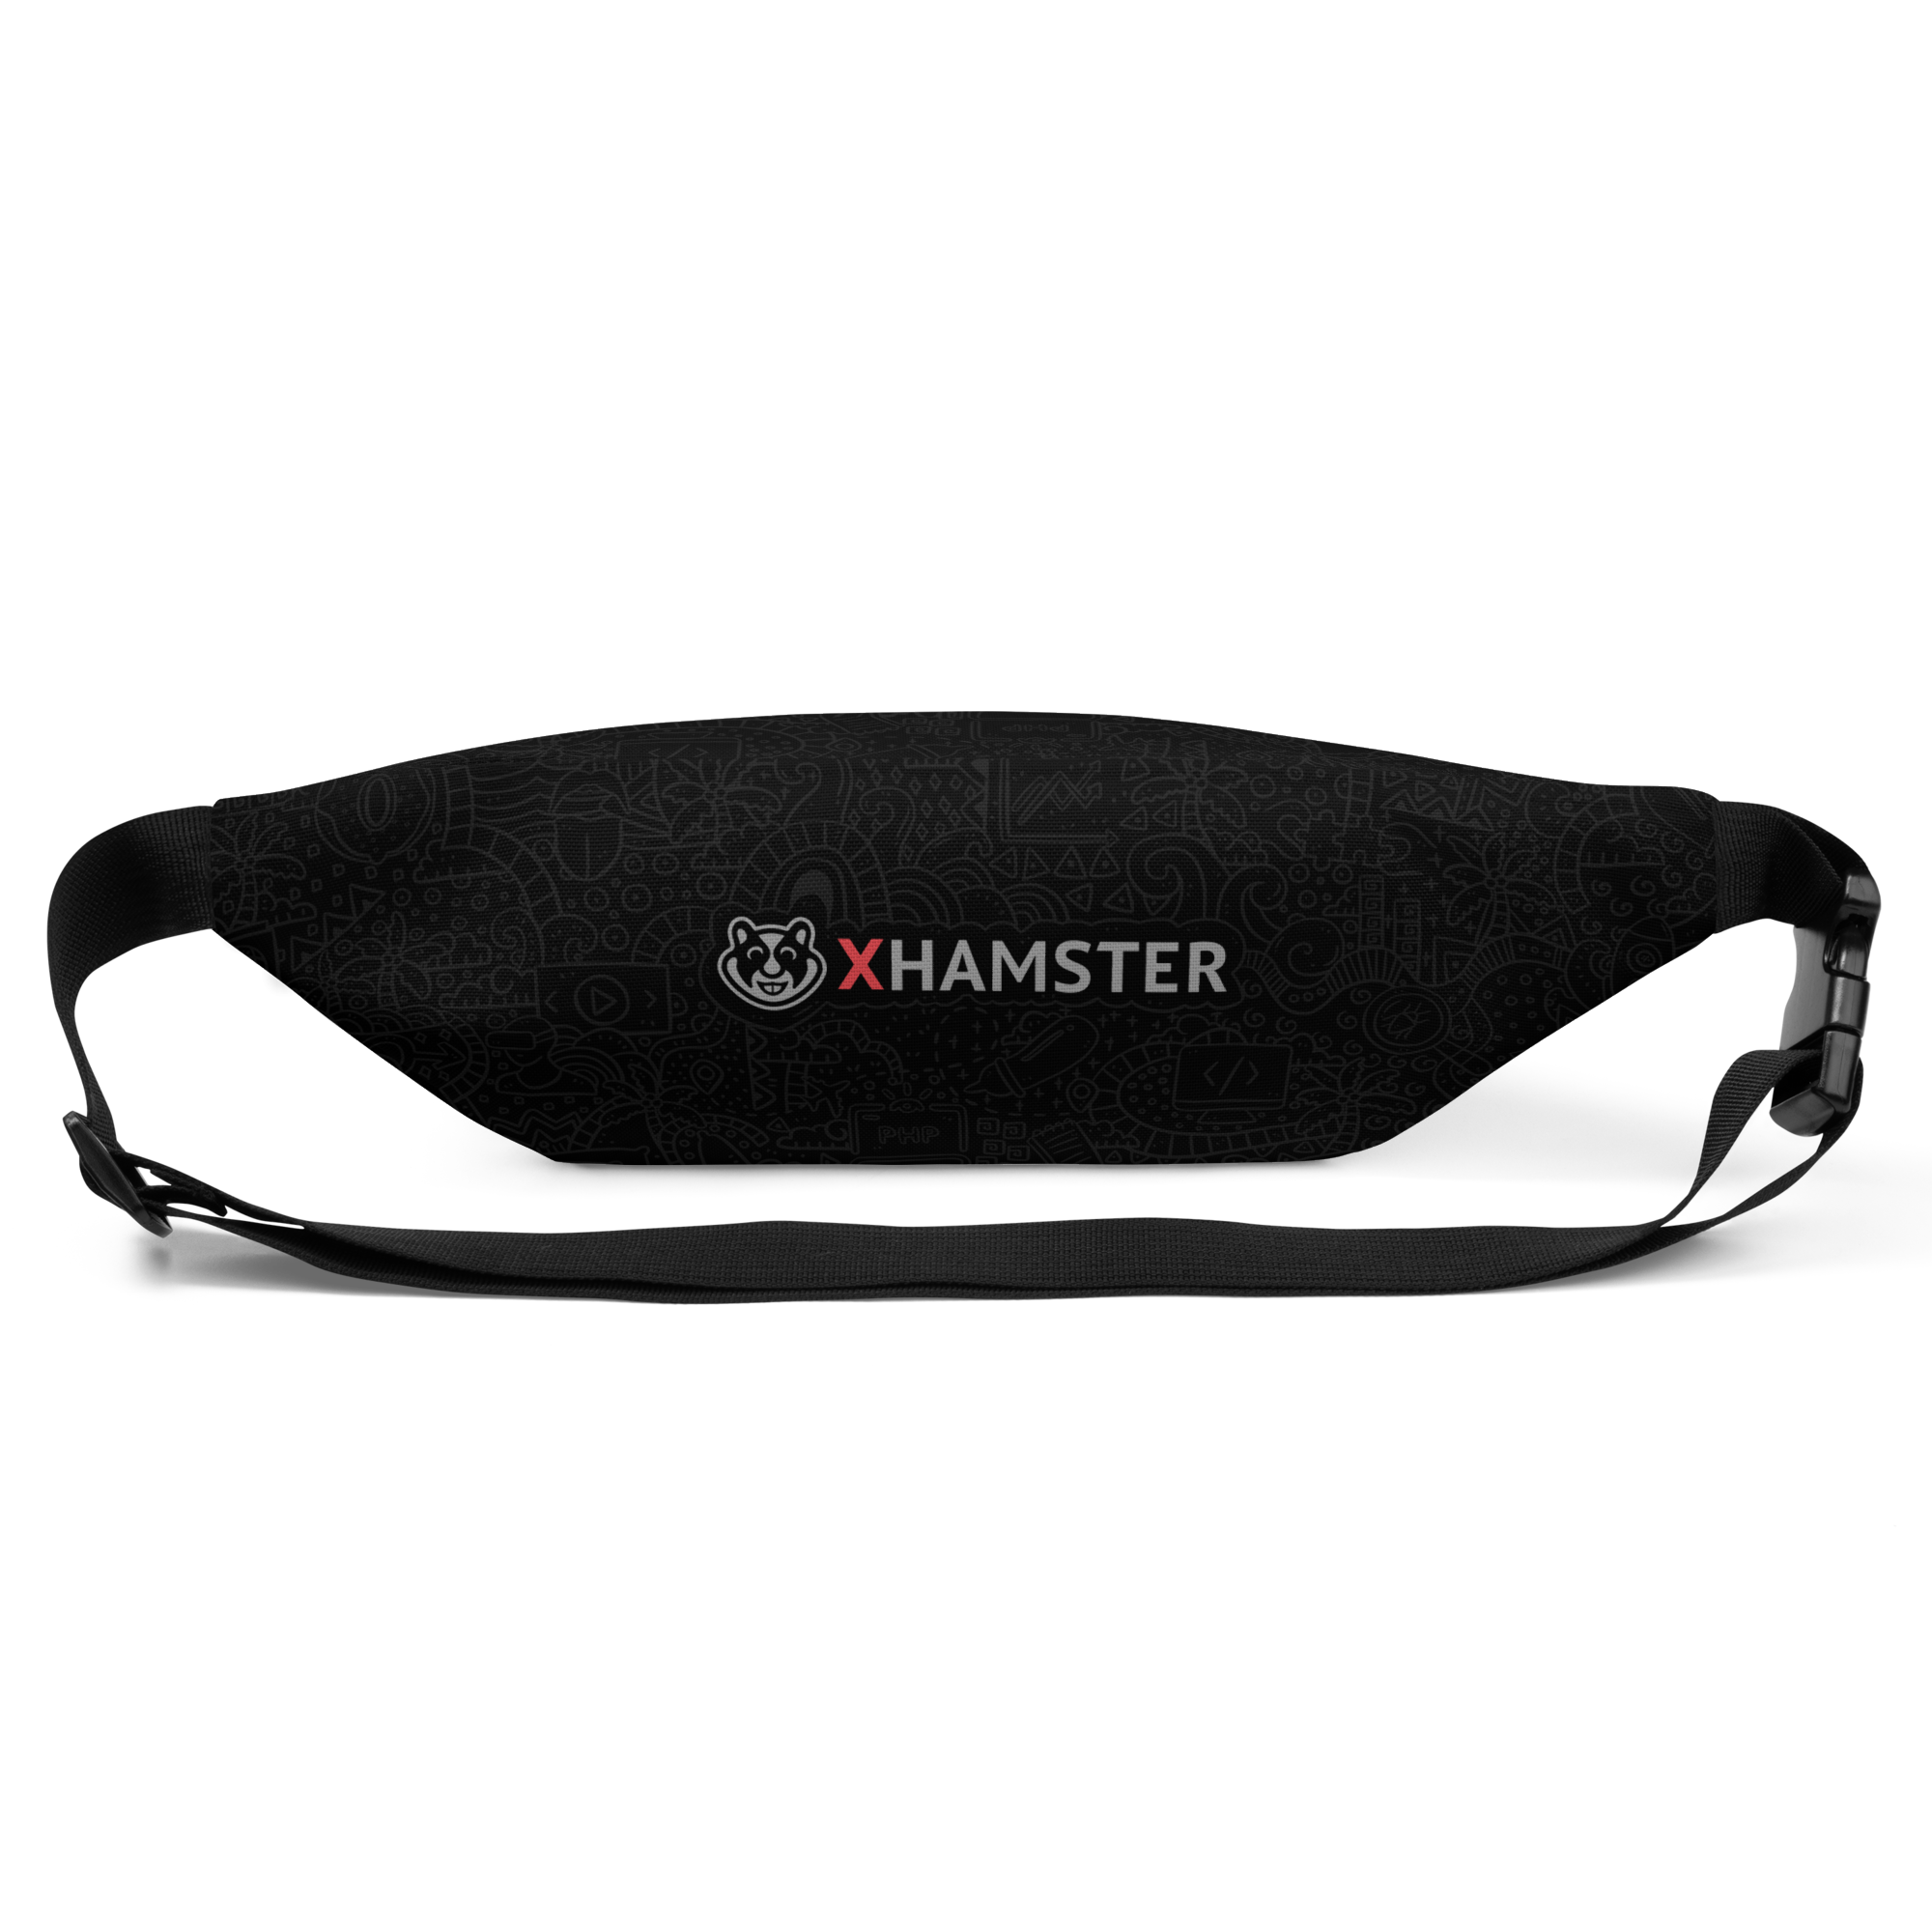 xHamster Waist Bag (Mascot Logo)